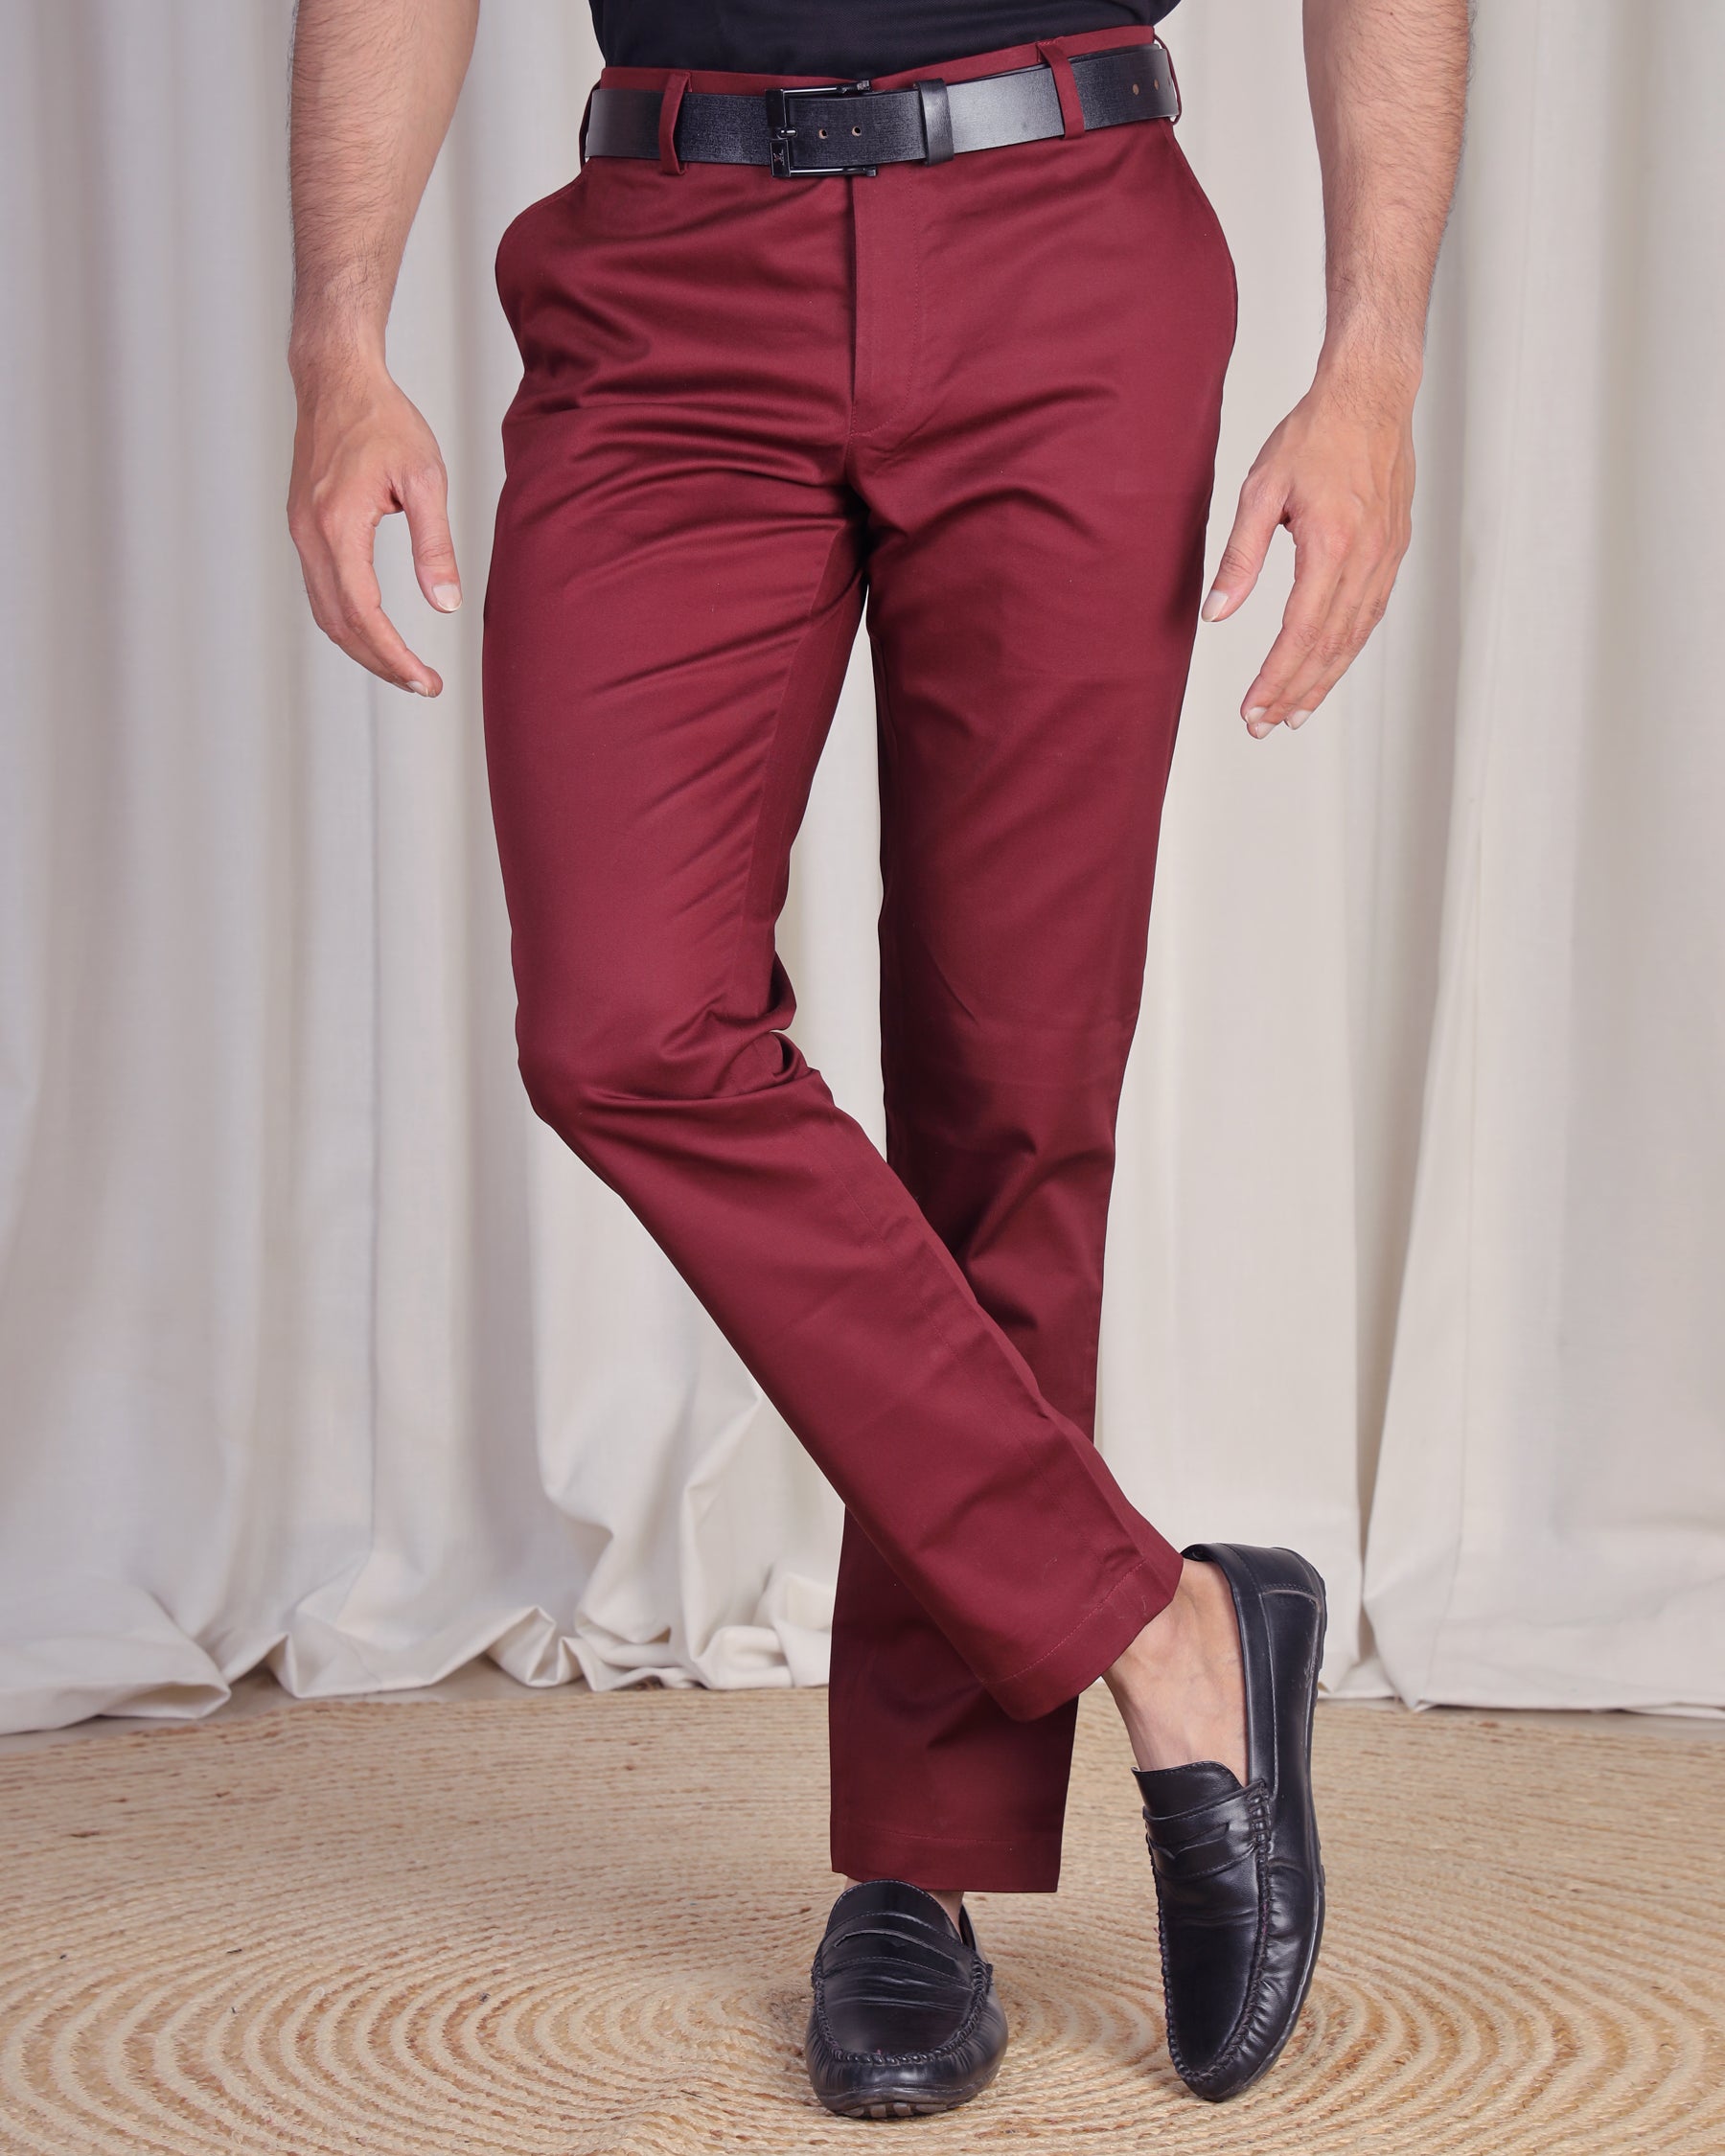 maroon pant for men